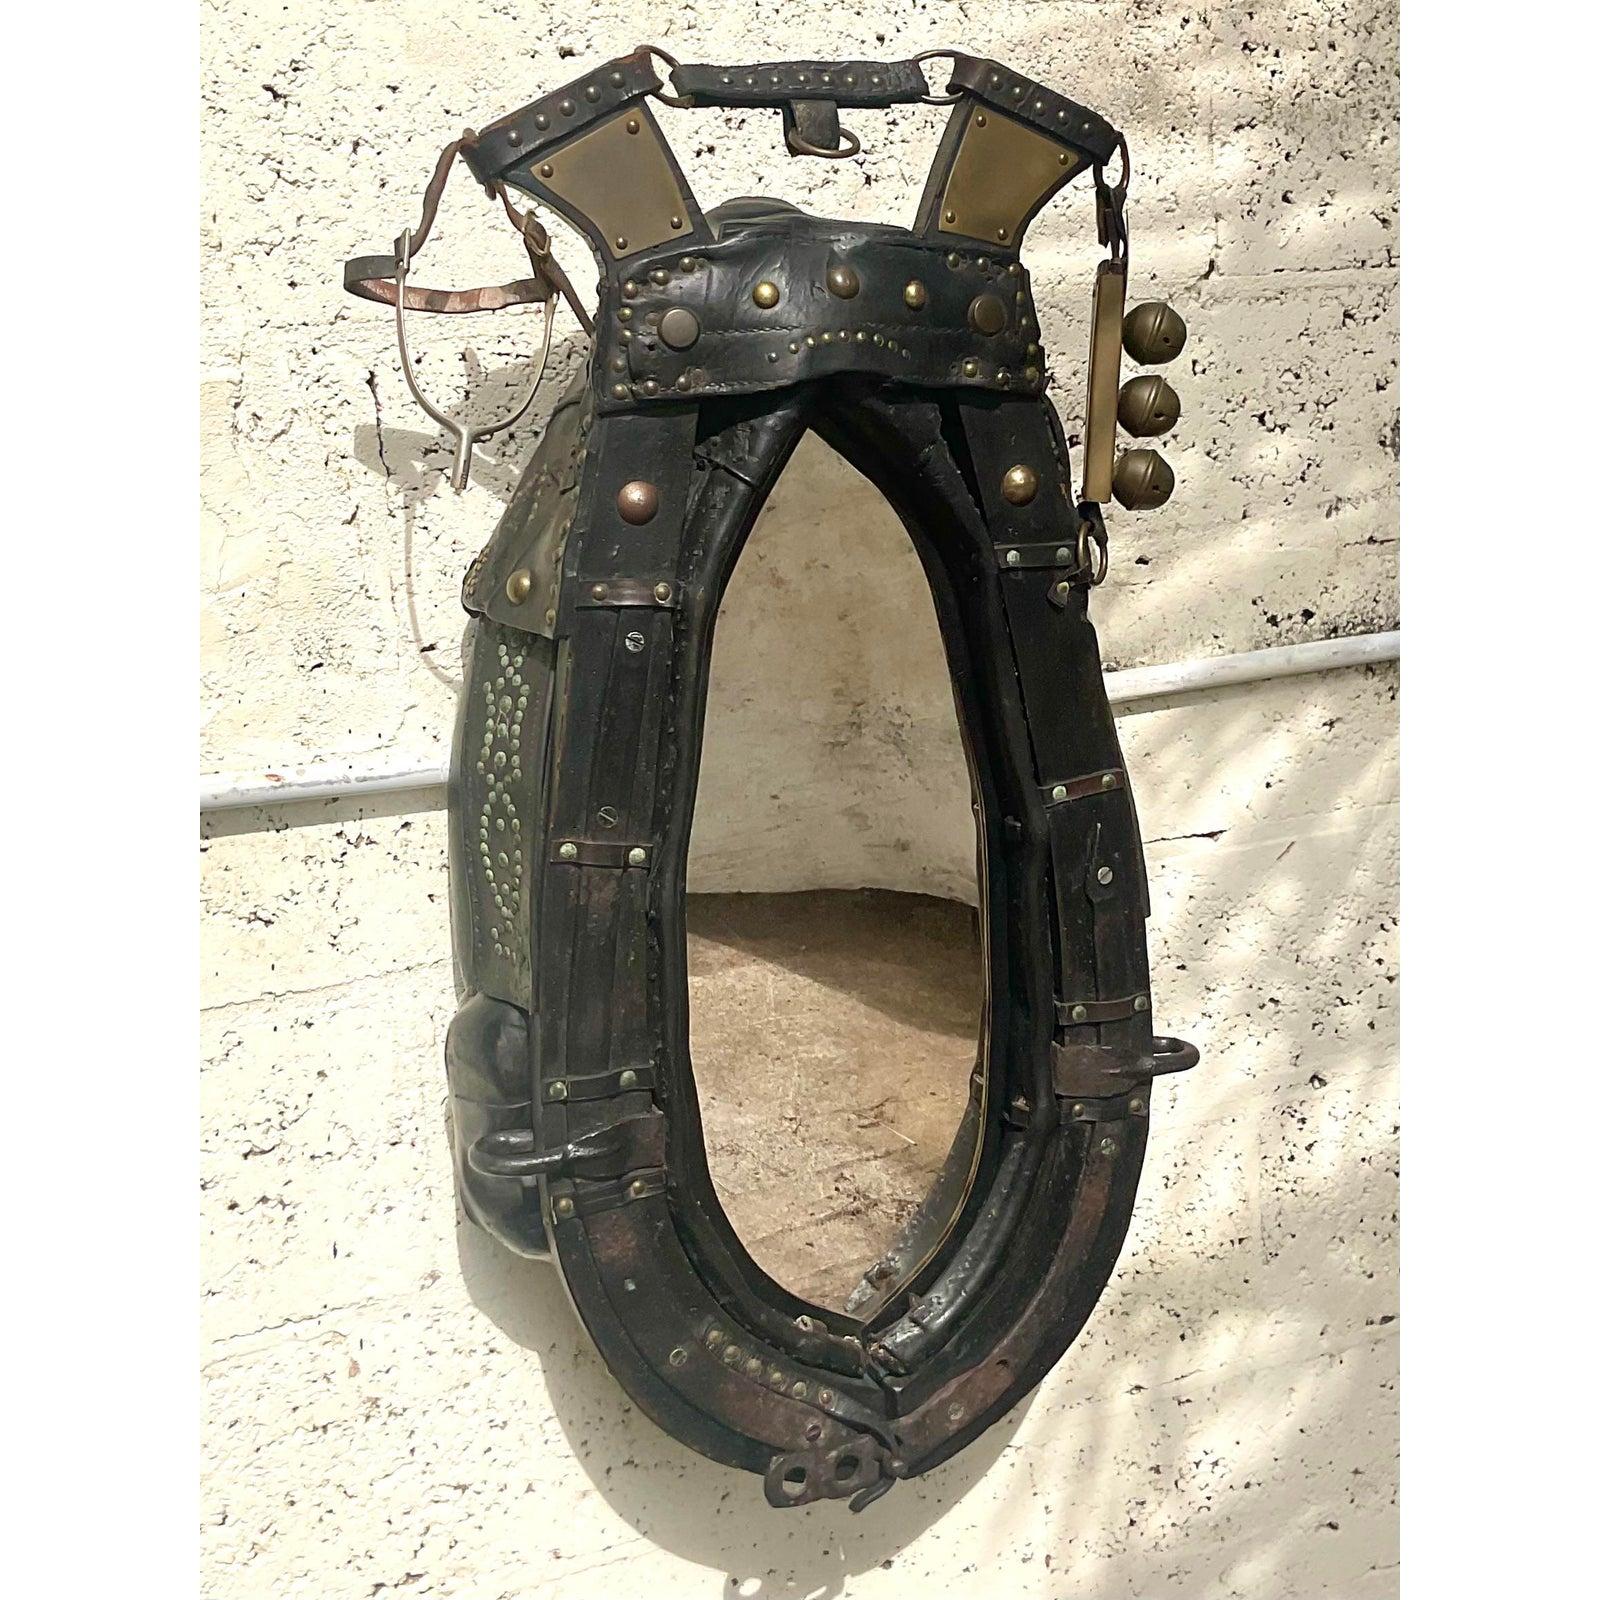 Ein fabelhaftes antikes Pferdegeschirr, das in einen Spiegel umgewandelt wurde. Diese werden für Schlittenpferde oder Zugpferde verwendet. Wunderschönes gealtertes Leder mit fantastischen Nieten-Details. Glocken und Steigbügel tragen zum Charme bei.